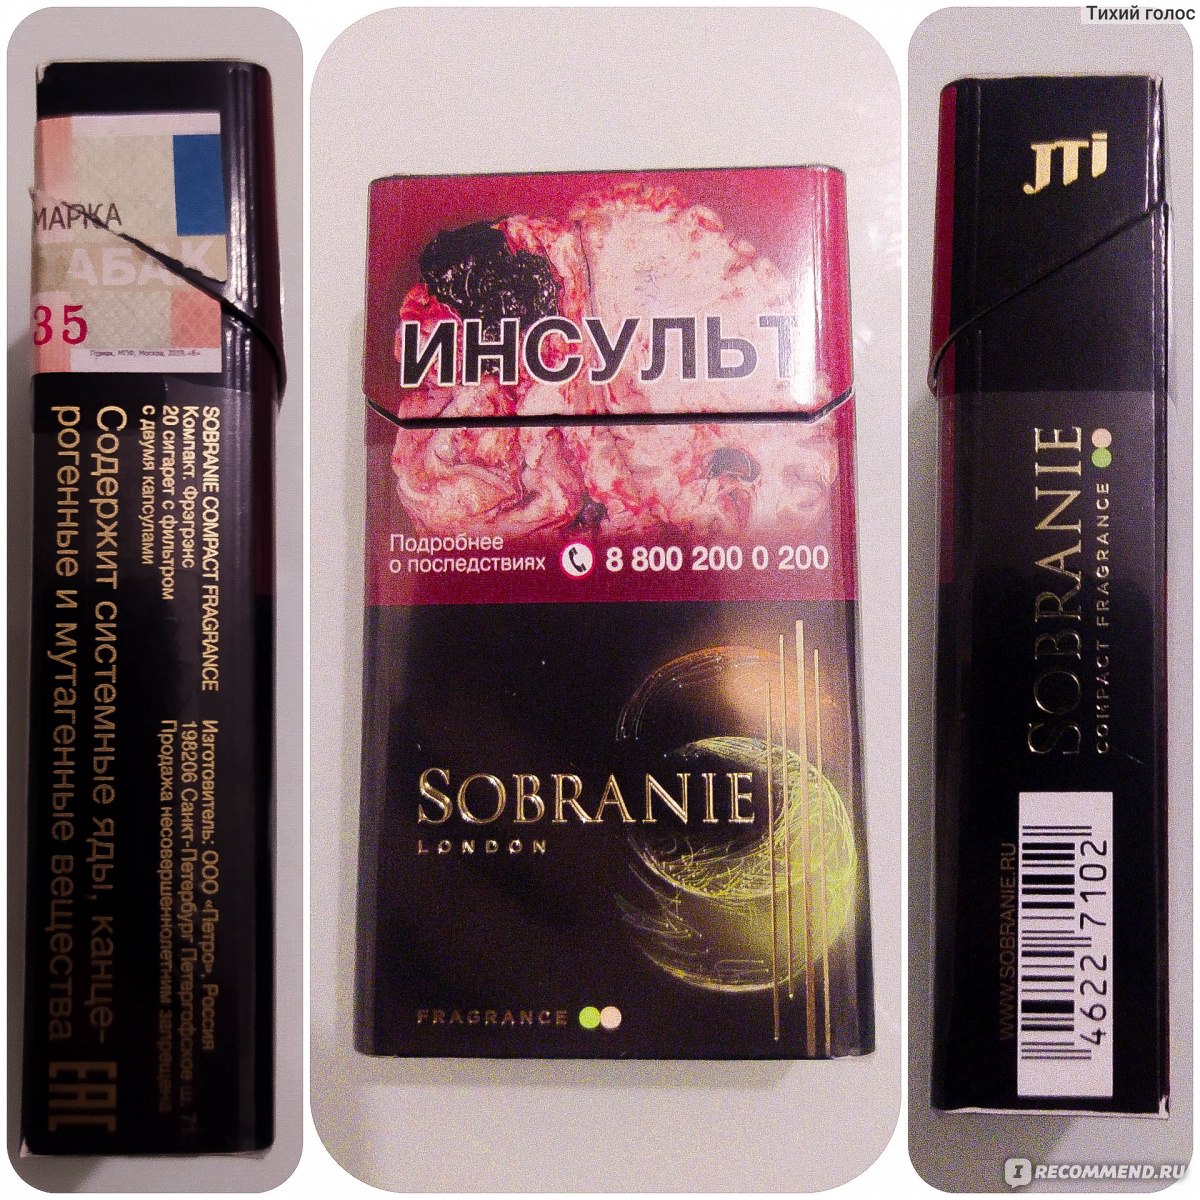 Собрание компакт. Сигареты Sobranie Compact Fragrance. Сигареты собрание компакт 2 кнопки. Собрание сигареты element Sapphire вкус. Cигареты с фильтром "Sobranie element Sapphire".